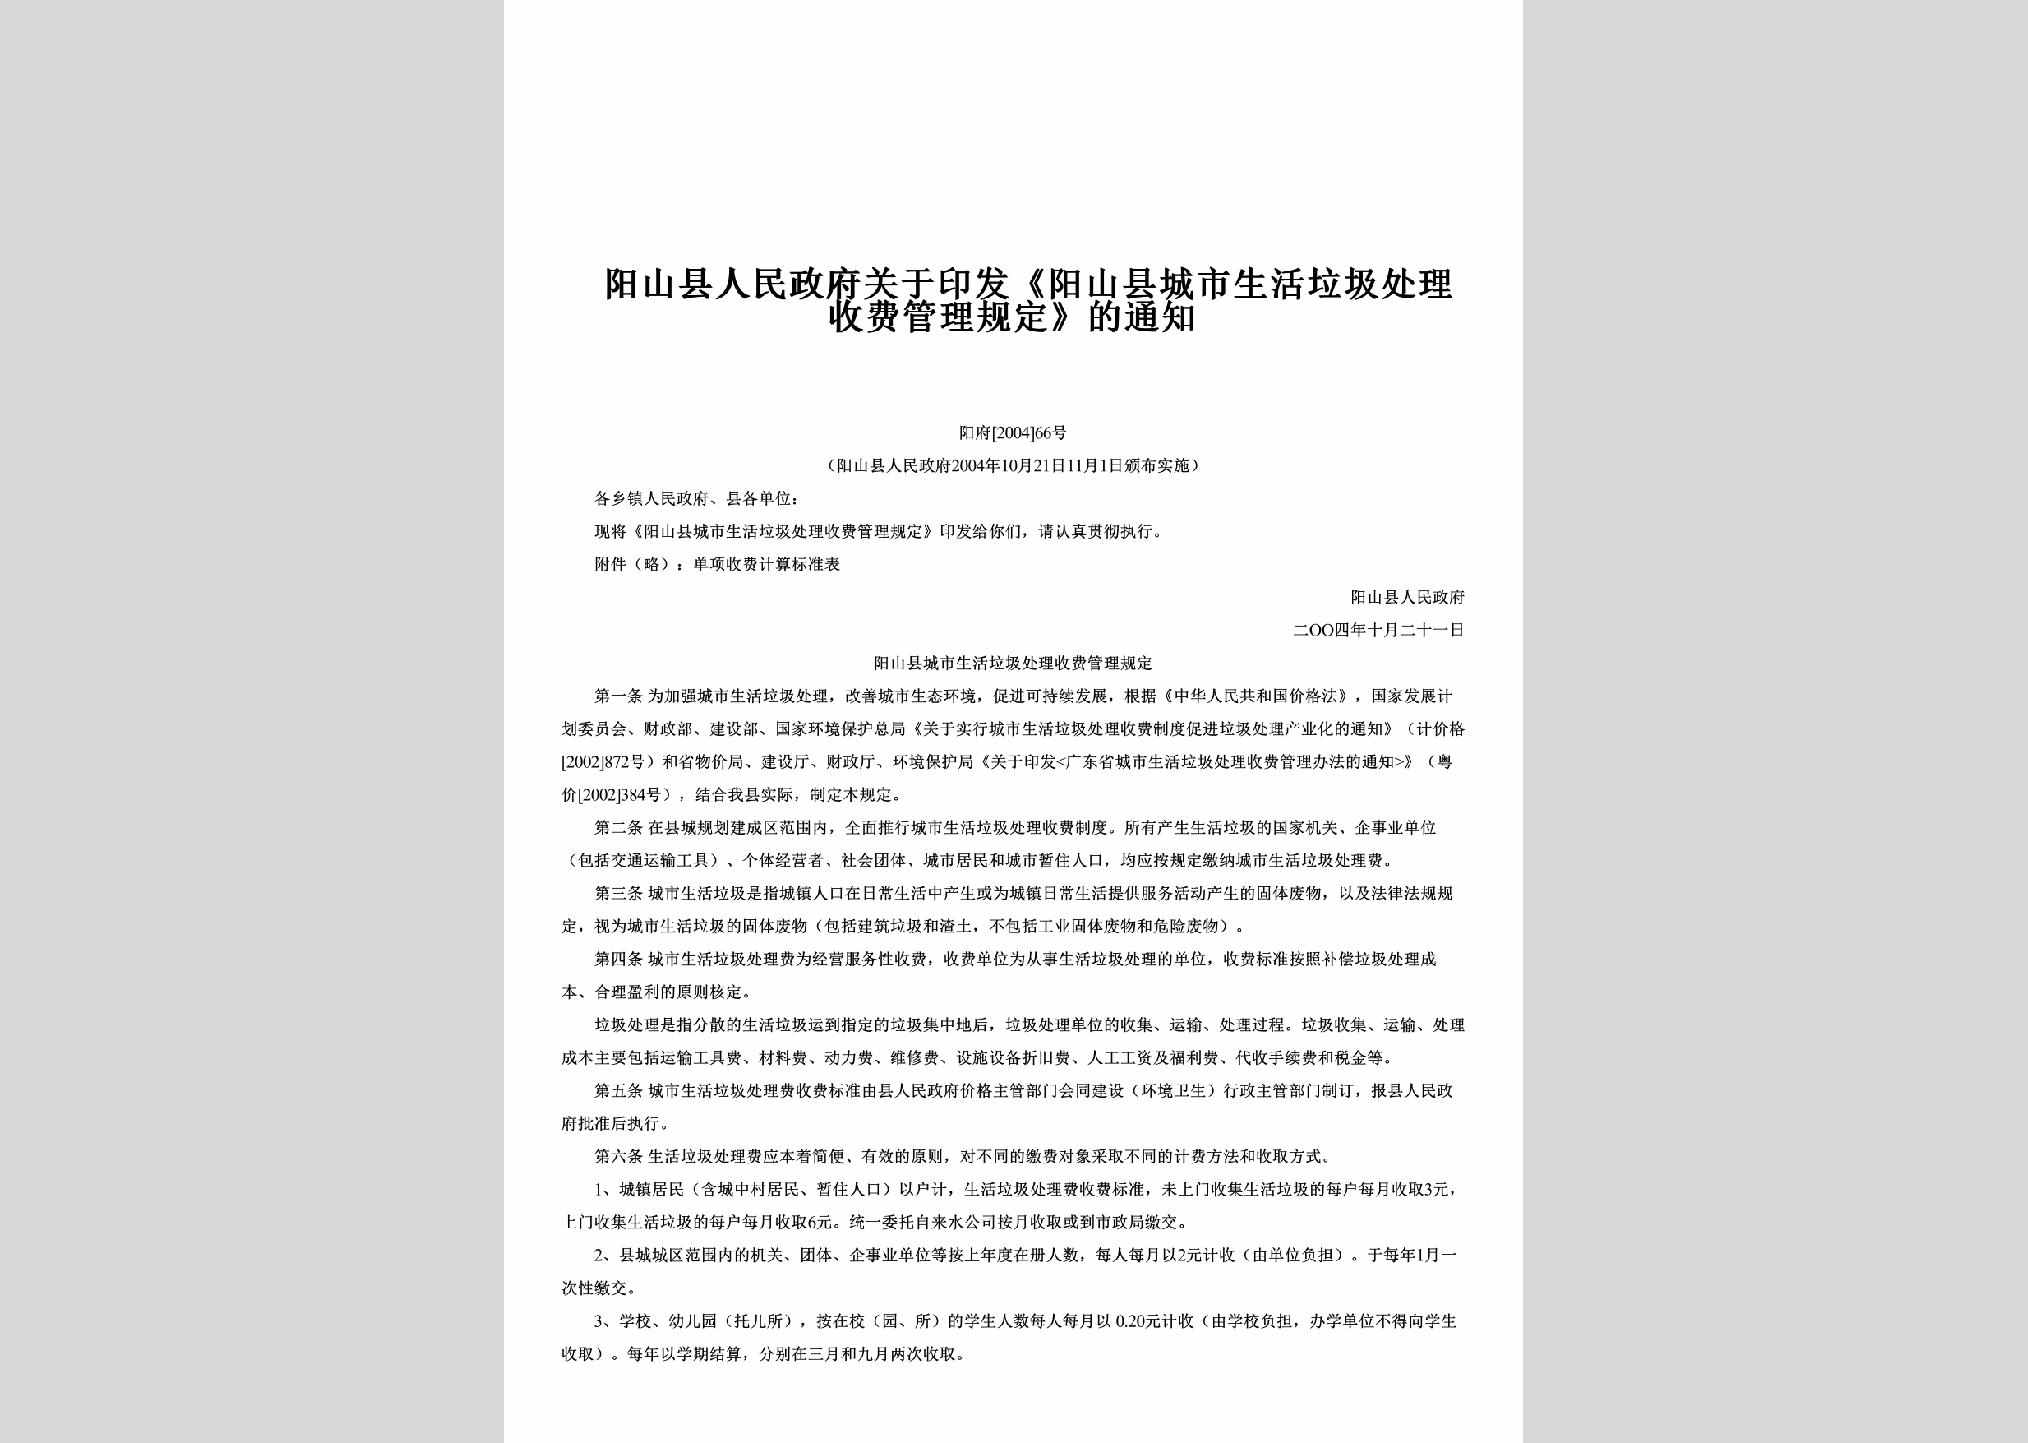 阳府[2004]66号：关于印发《阳山县城市生活垃圾处理收费管理规定》的通知